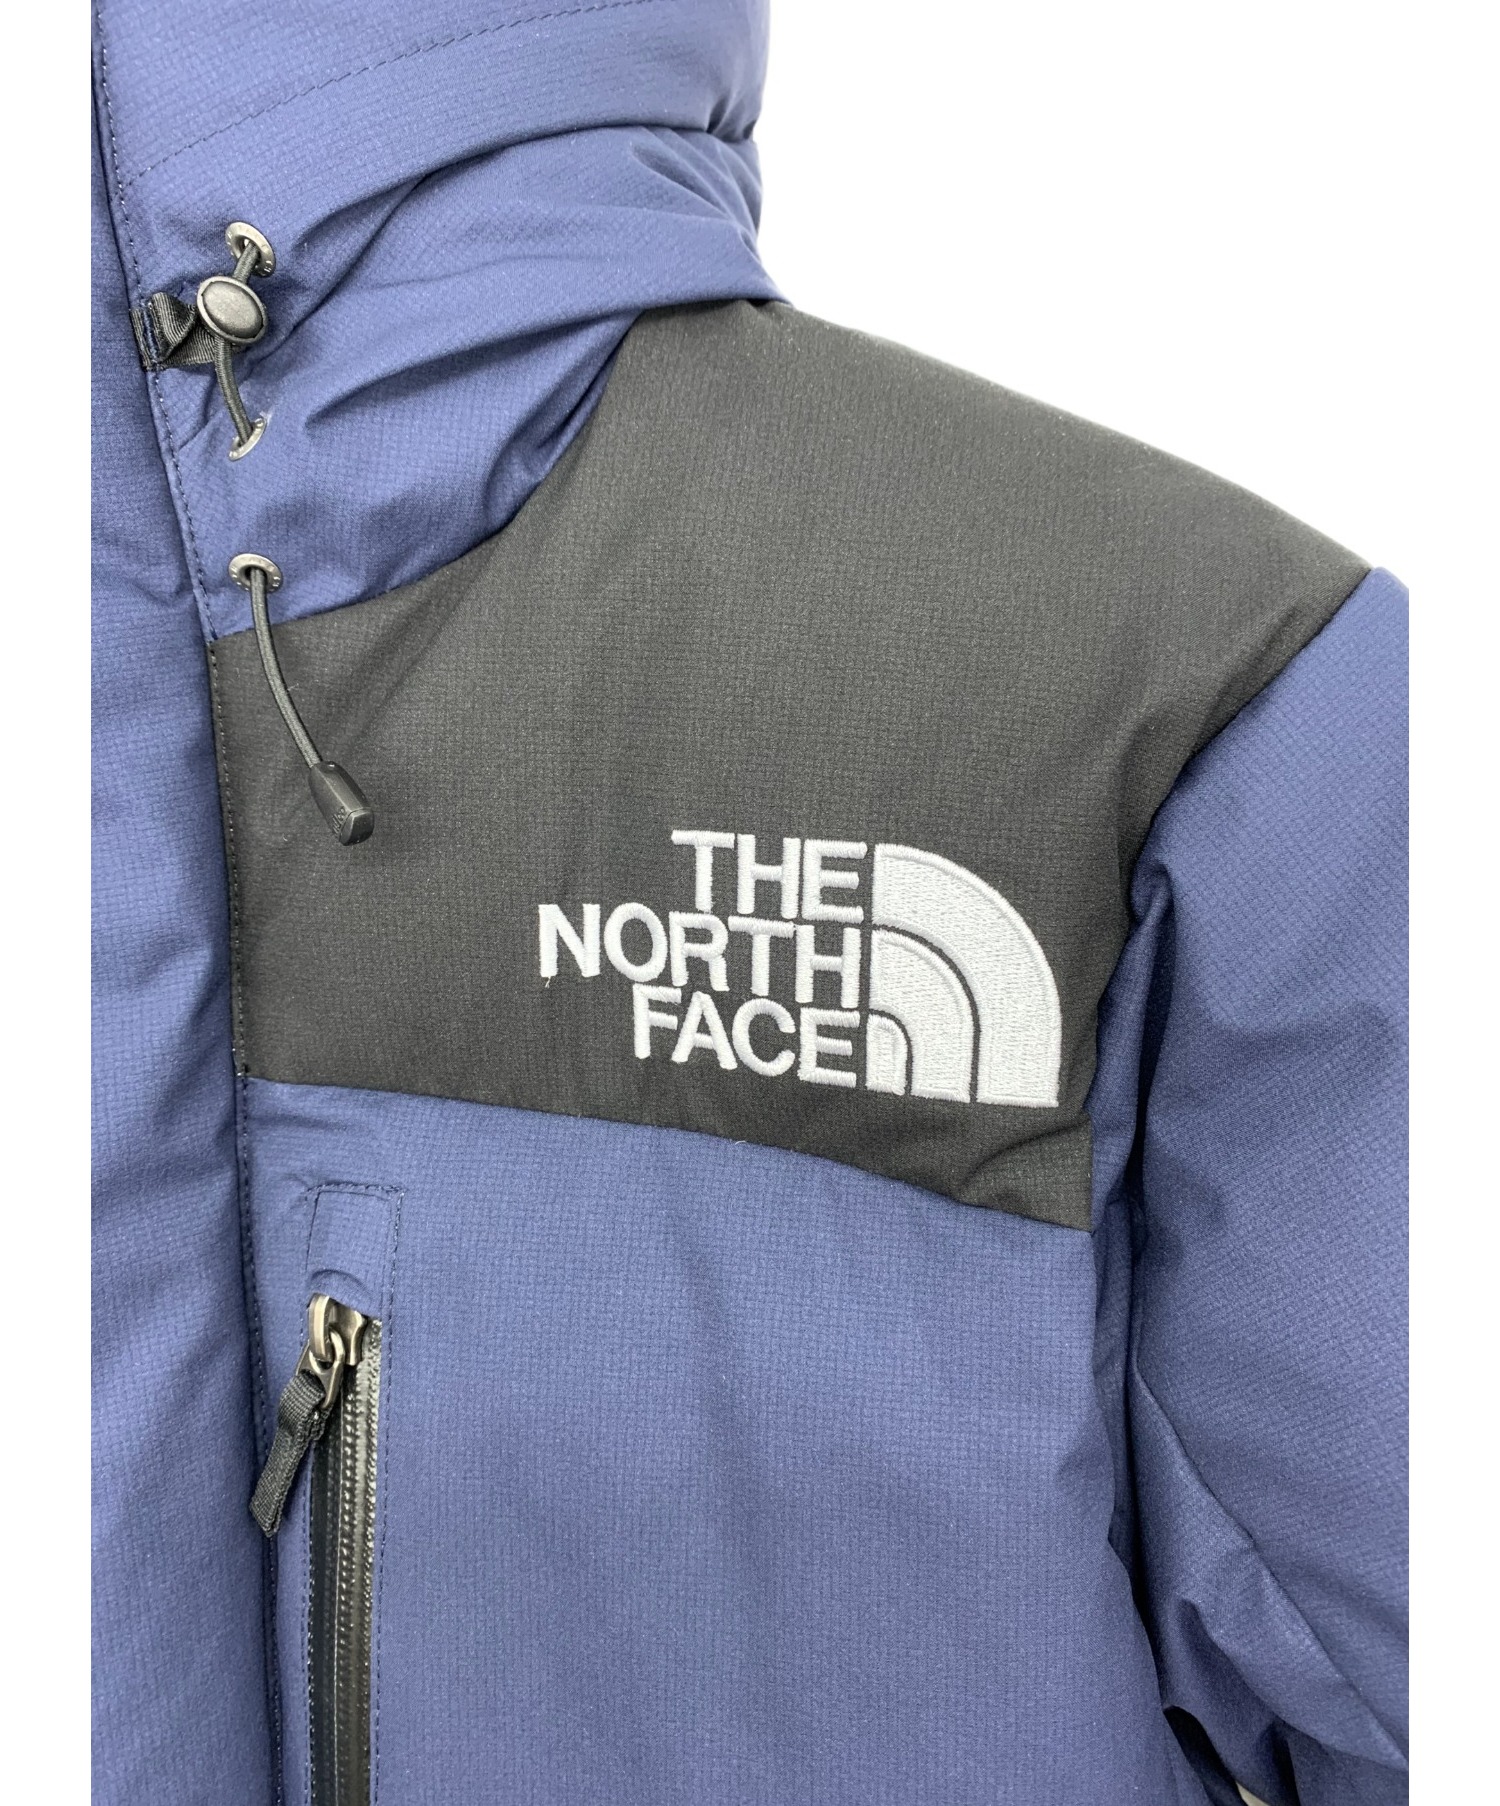 THE NORTH FACE (ザノースフェイス) バルトロライトジャケット ネイビー×ブラック サイズ:S